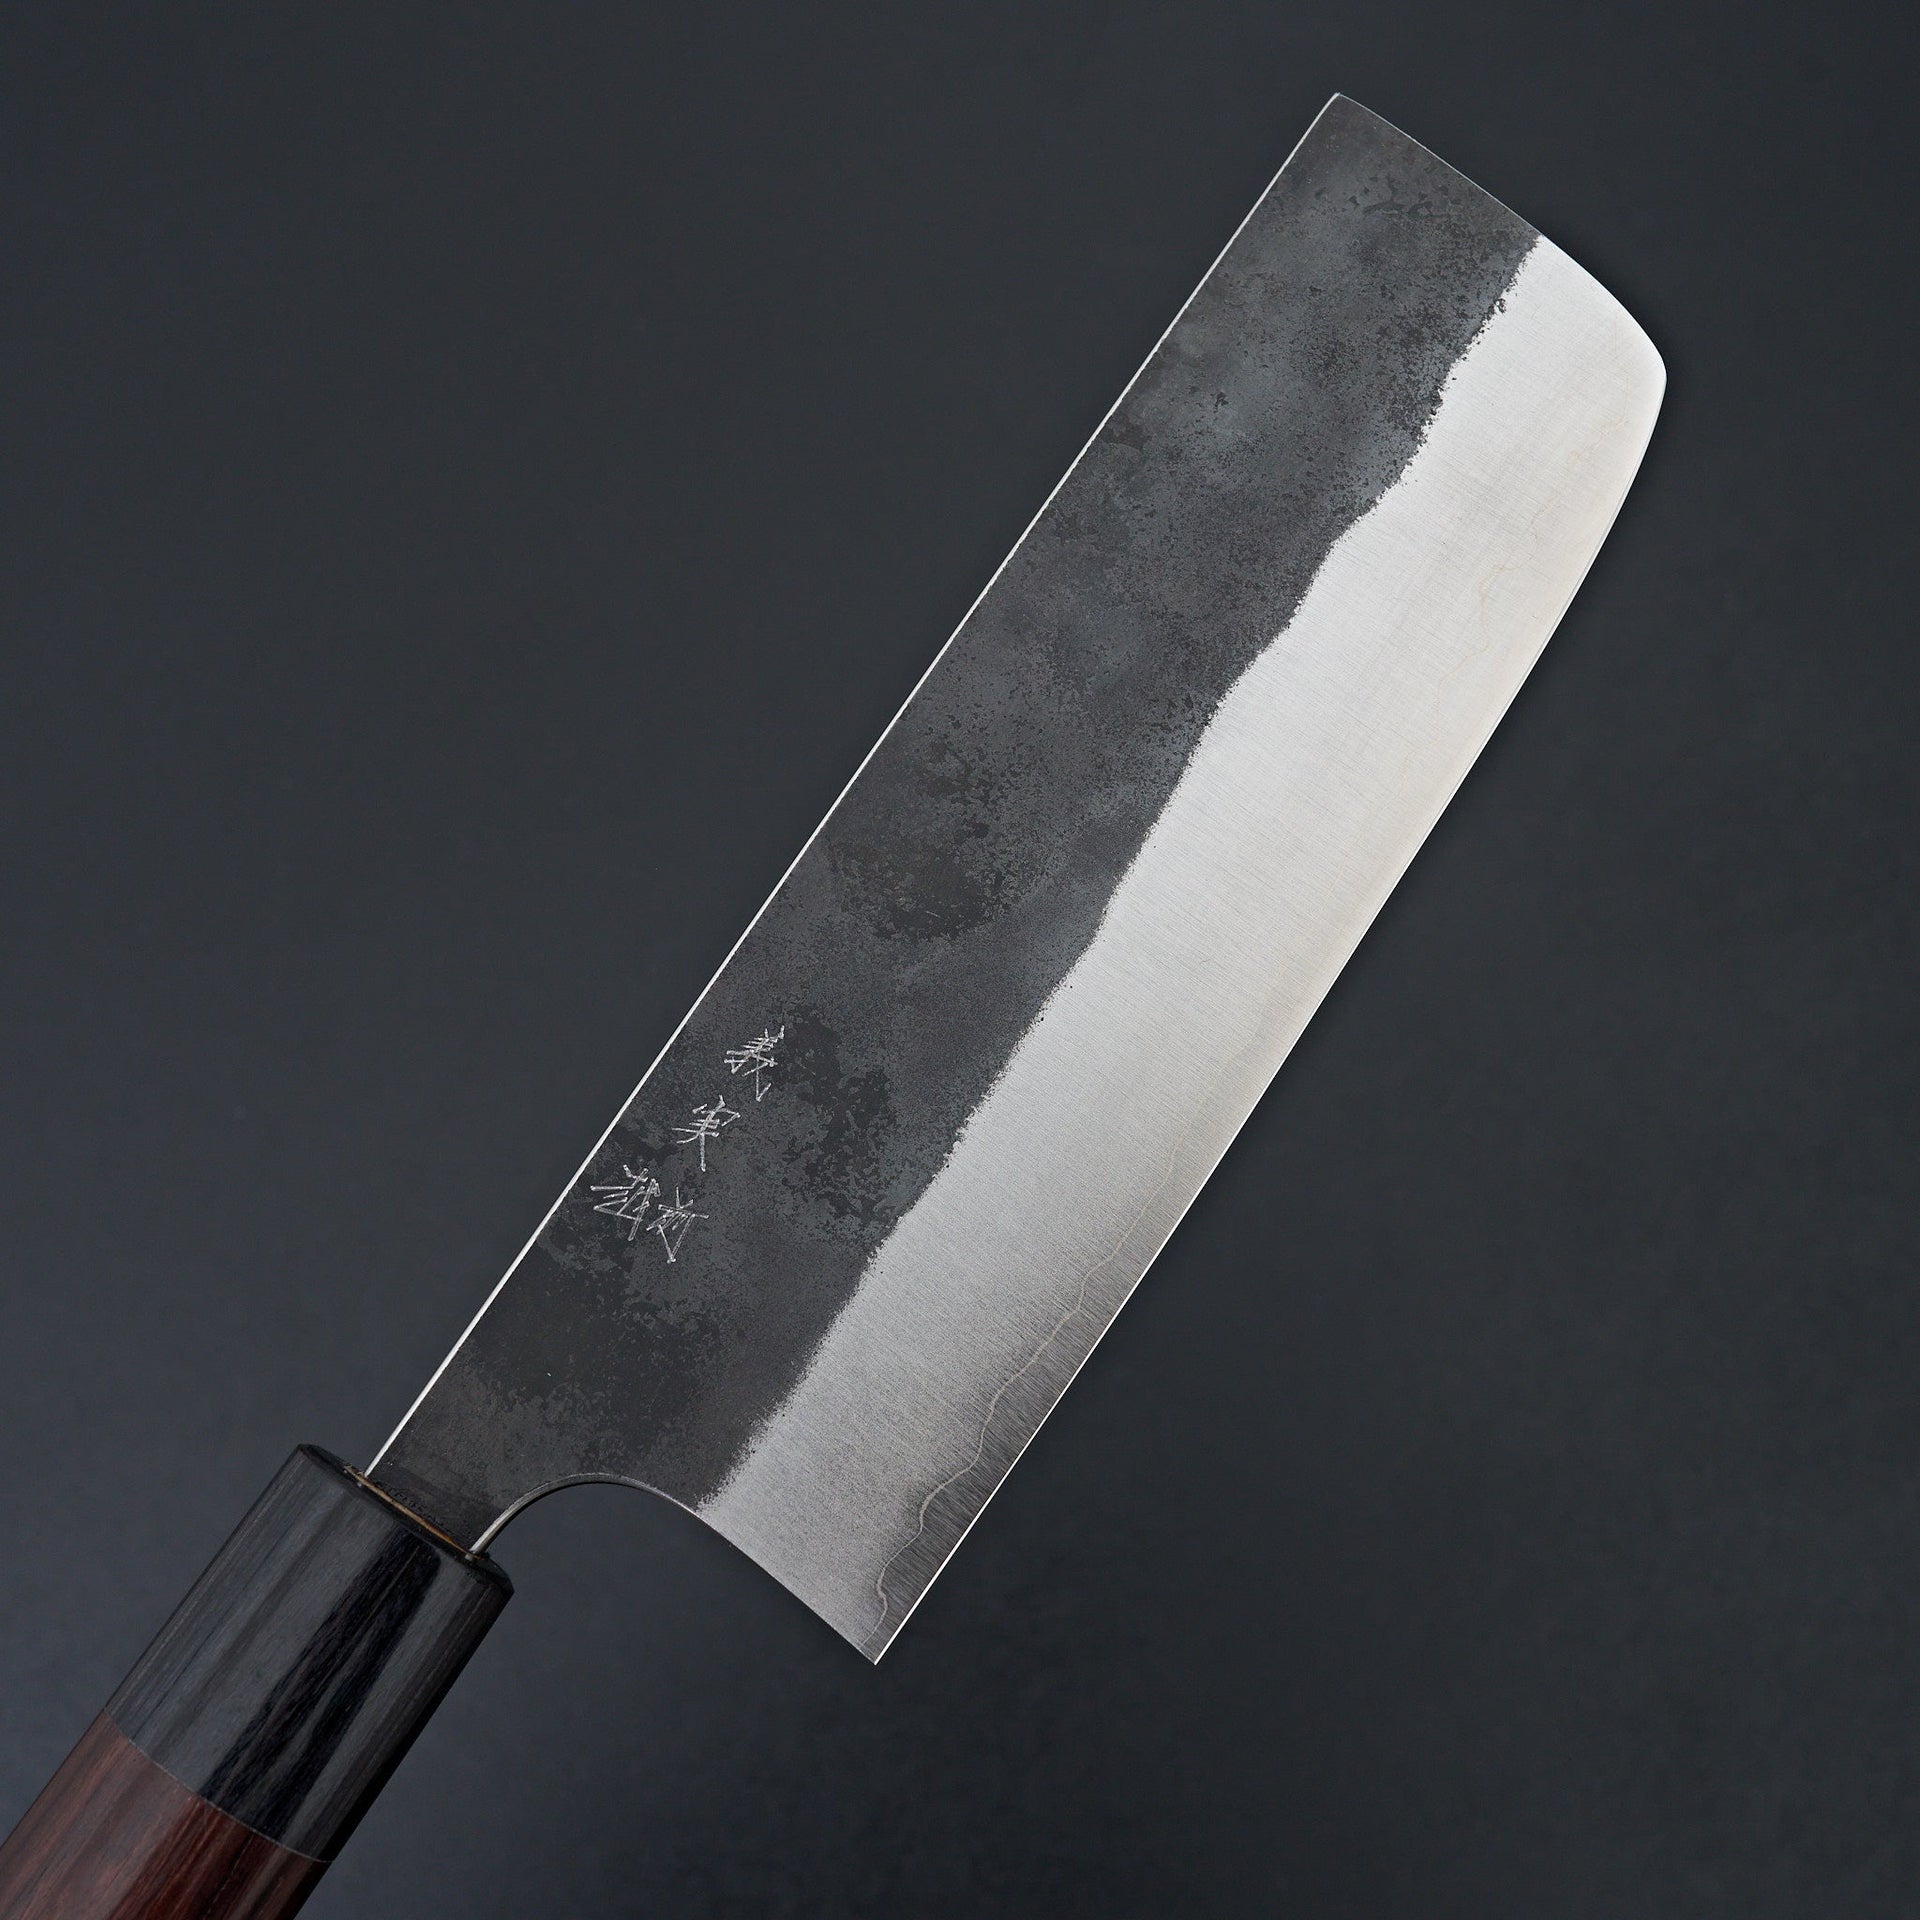 Kato AS Kurouchi Nakiri 165mm-Knife-Yoshimi Kato-Carbon Knife Co